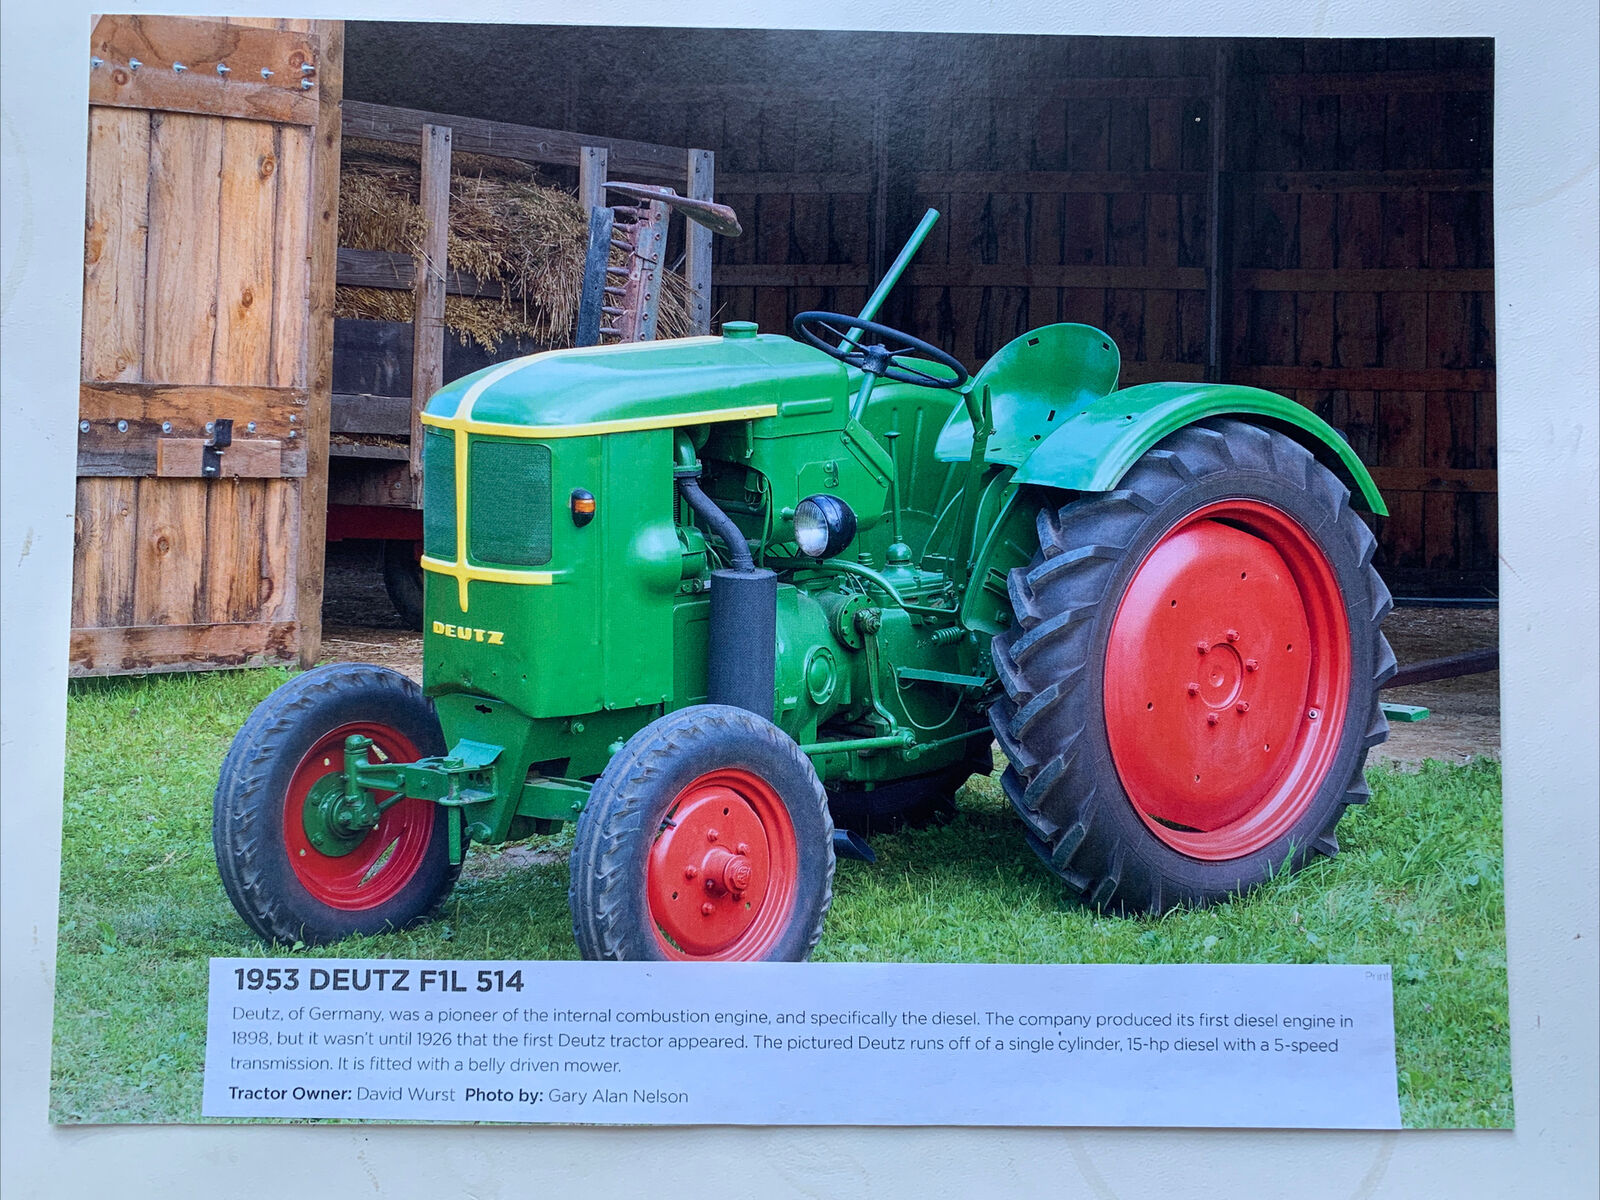 1953 Deutz F1L 514 Tractor Photo With Description 8.5x11